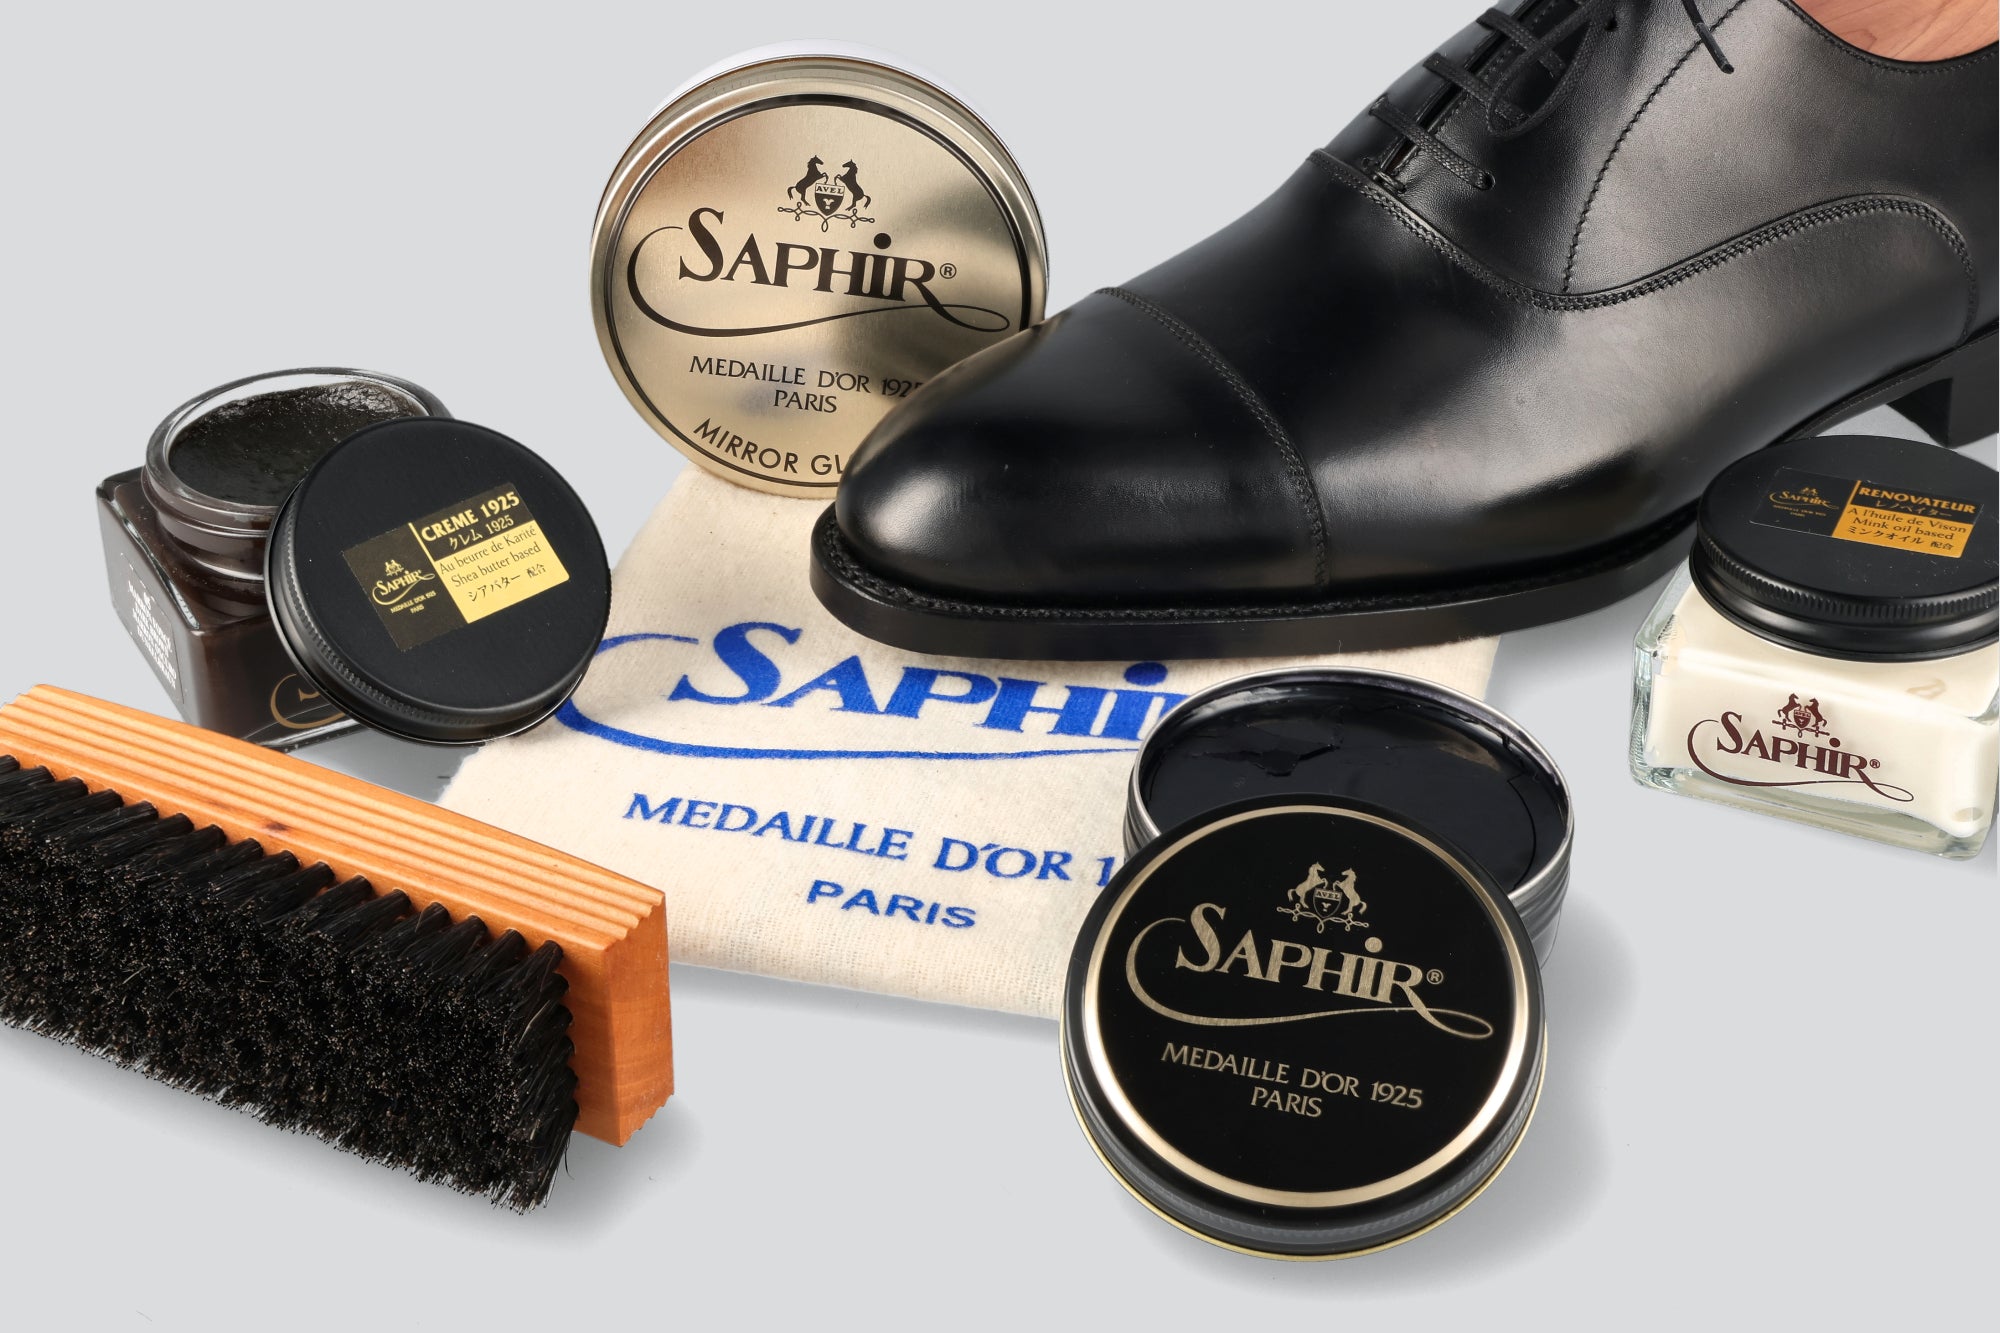 A saphir shoe polish kit with a black dress shoe